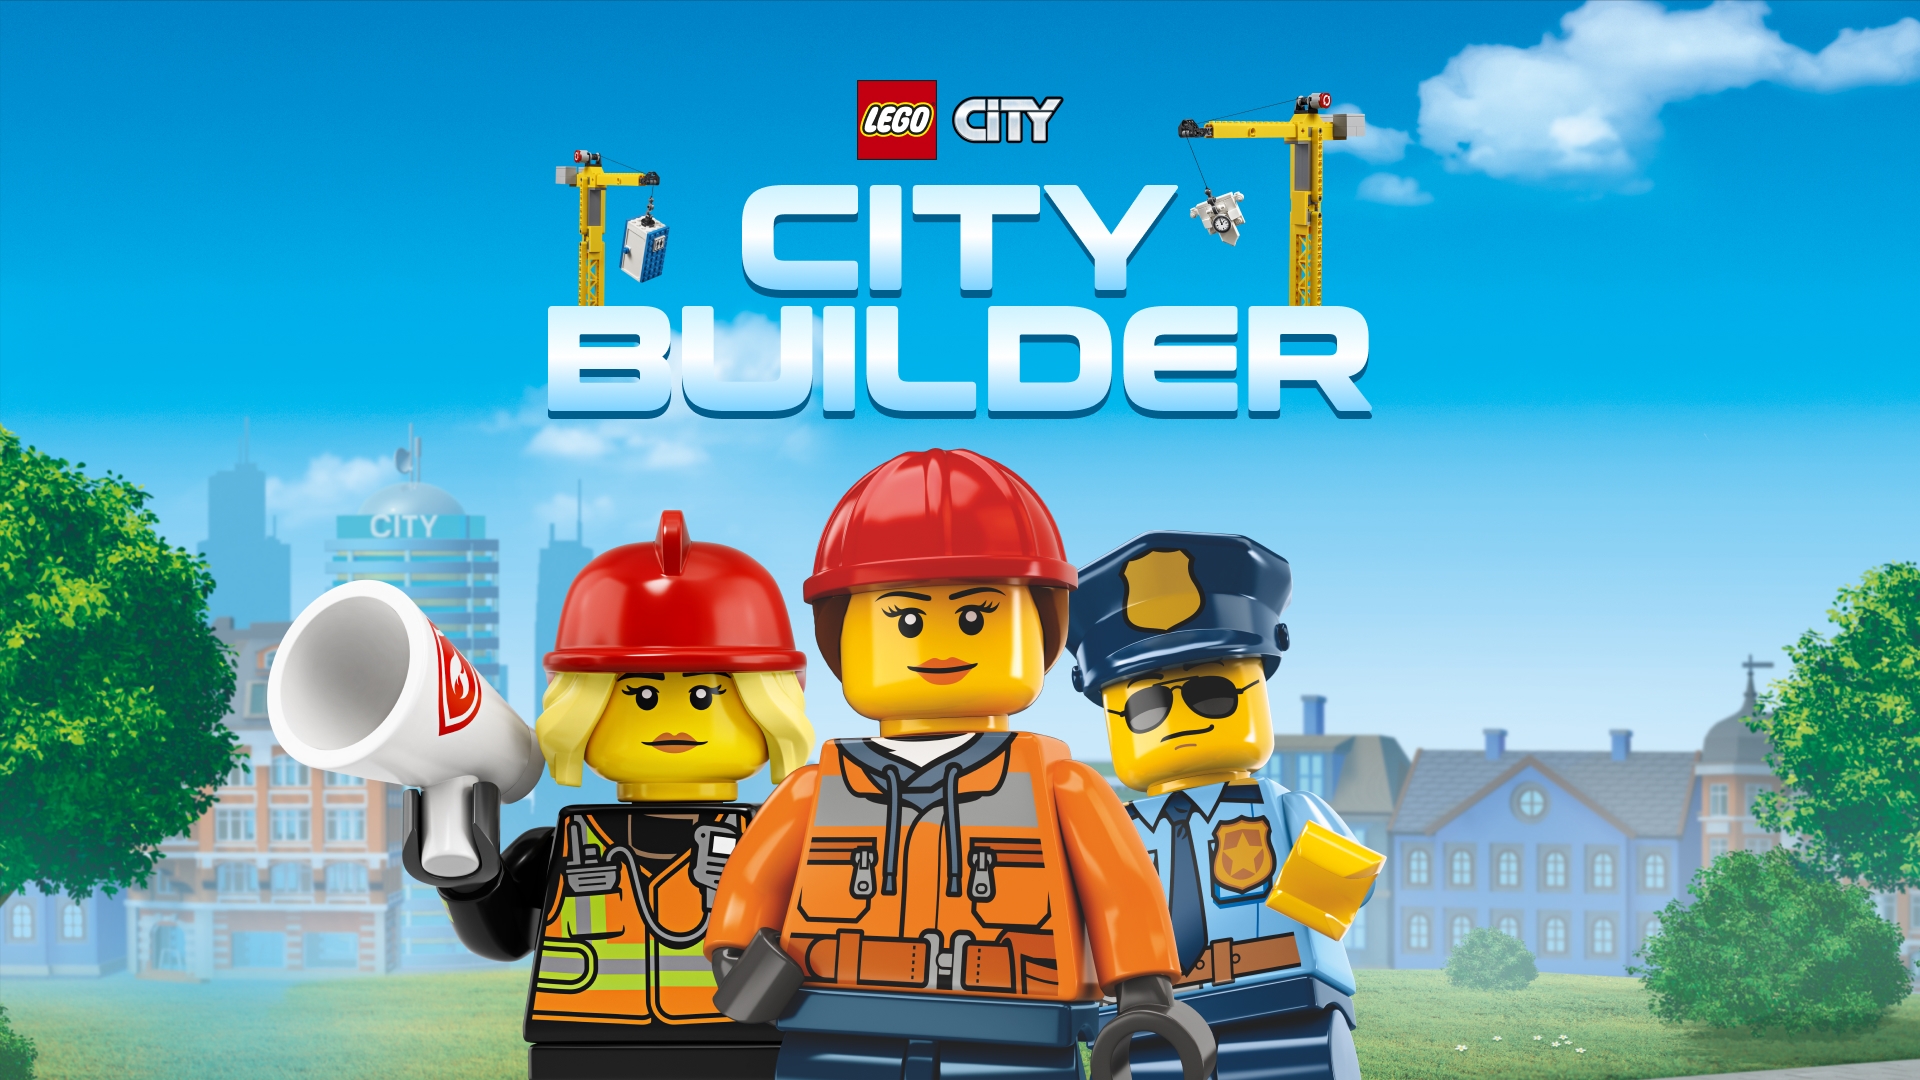 City Builder LEGO® City Games - LEGO.com for kids